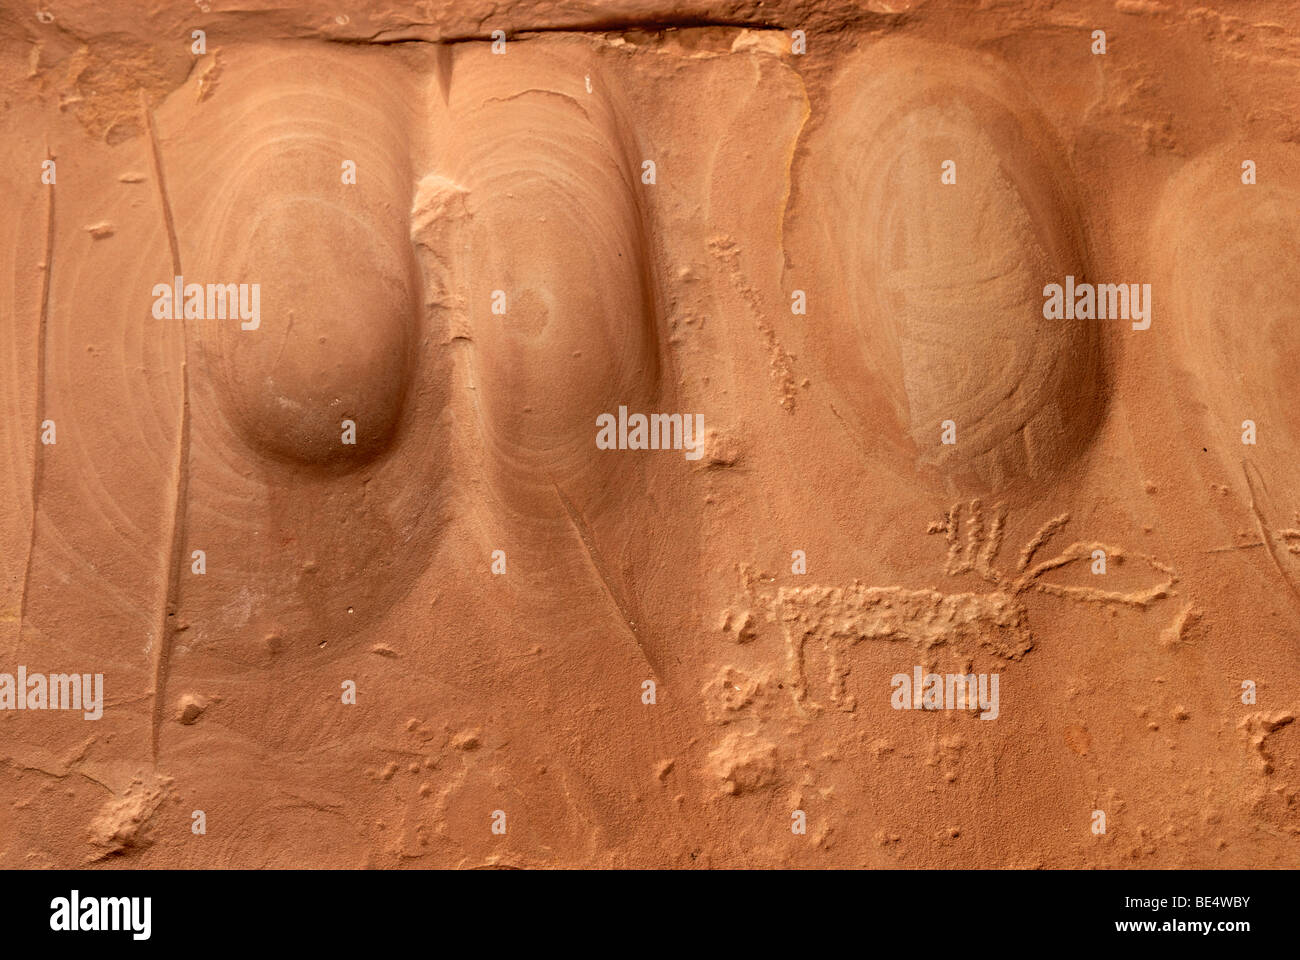 Trogoli di molatura con incisa una cervi, incisioni rupestri in arenaria rossa, circa 900 anni fa, gli Indiani Anasazi, molle fredda grotta n Foto Stock